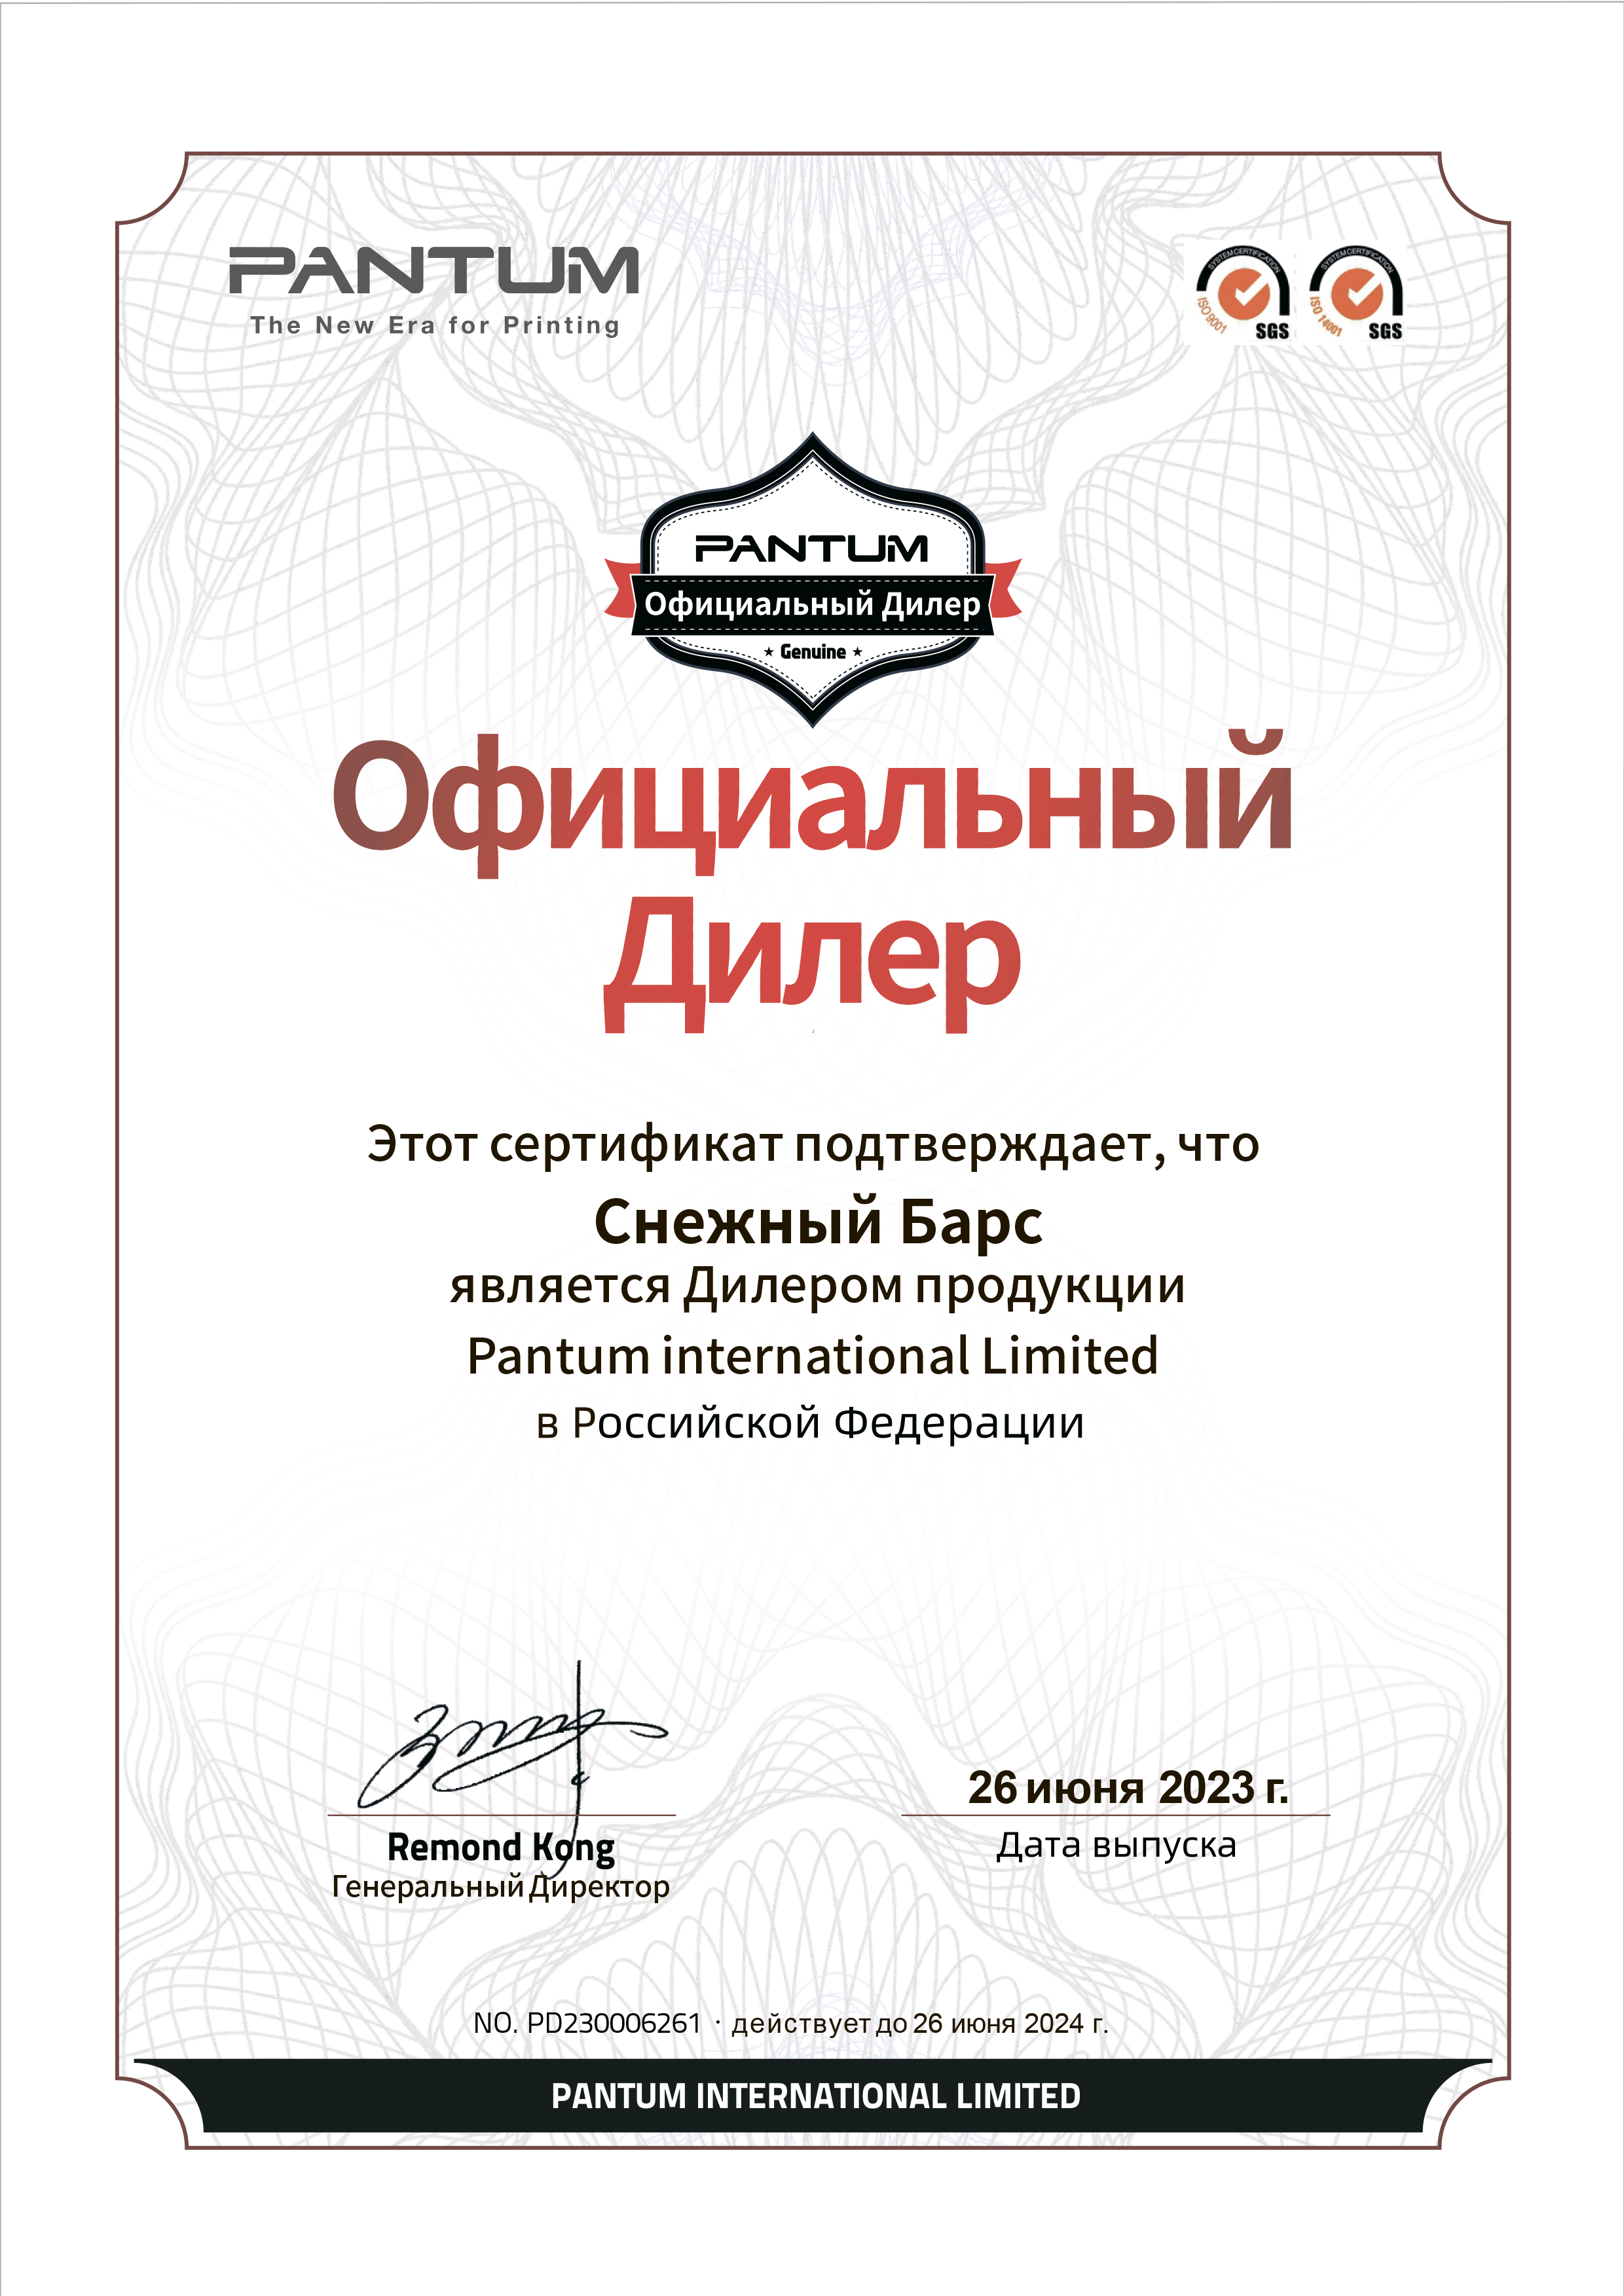 Сертификат официального дилера Pantum